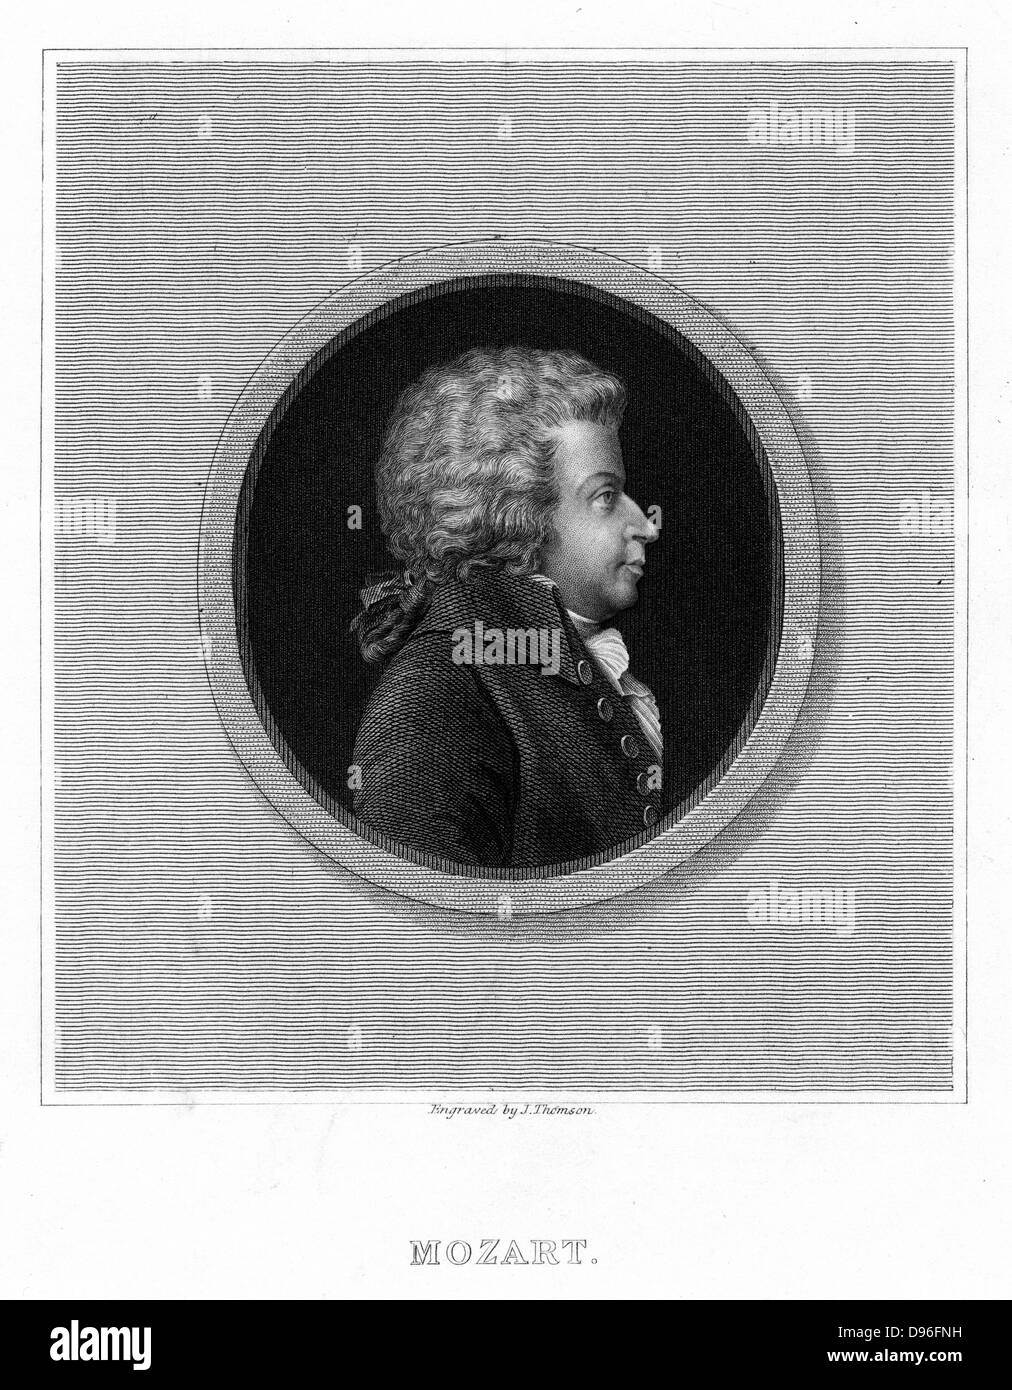 Wolfgang Amadeus Mozart (1756-1791), österreichischer Komponist. Aus "Die Galerie von Porträts" von Charles Knight. (London, 1837). Stockfoto